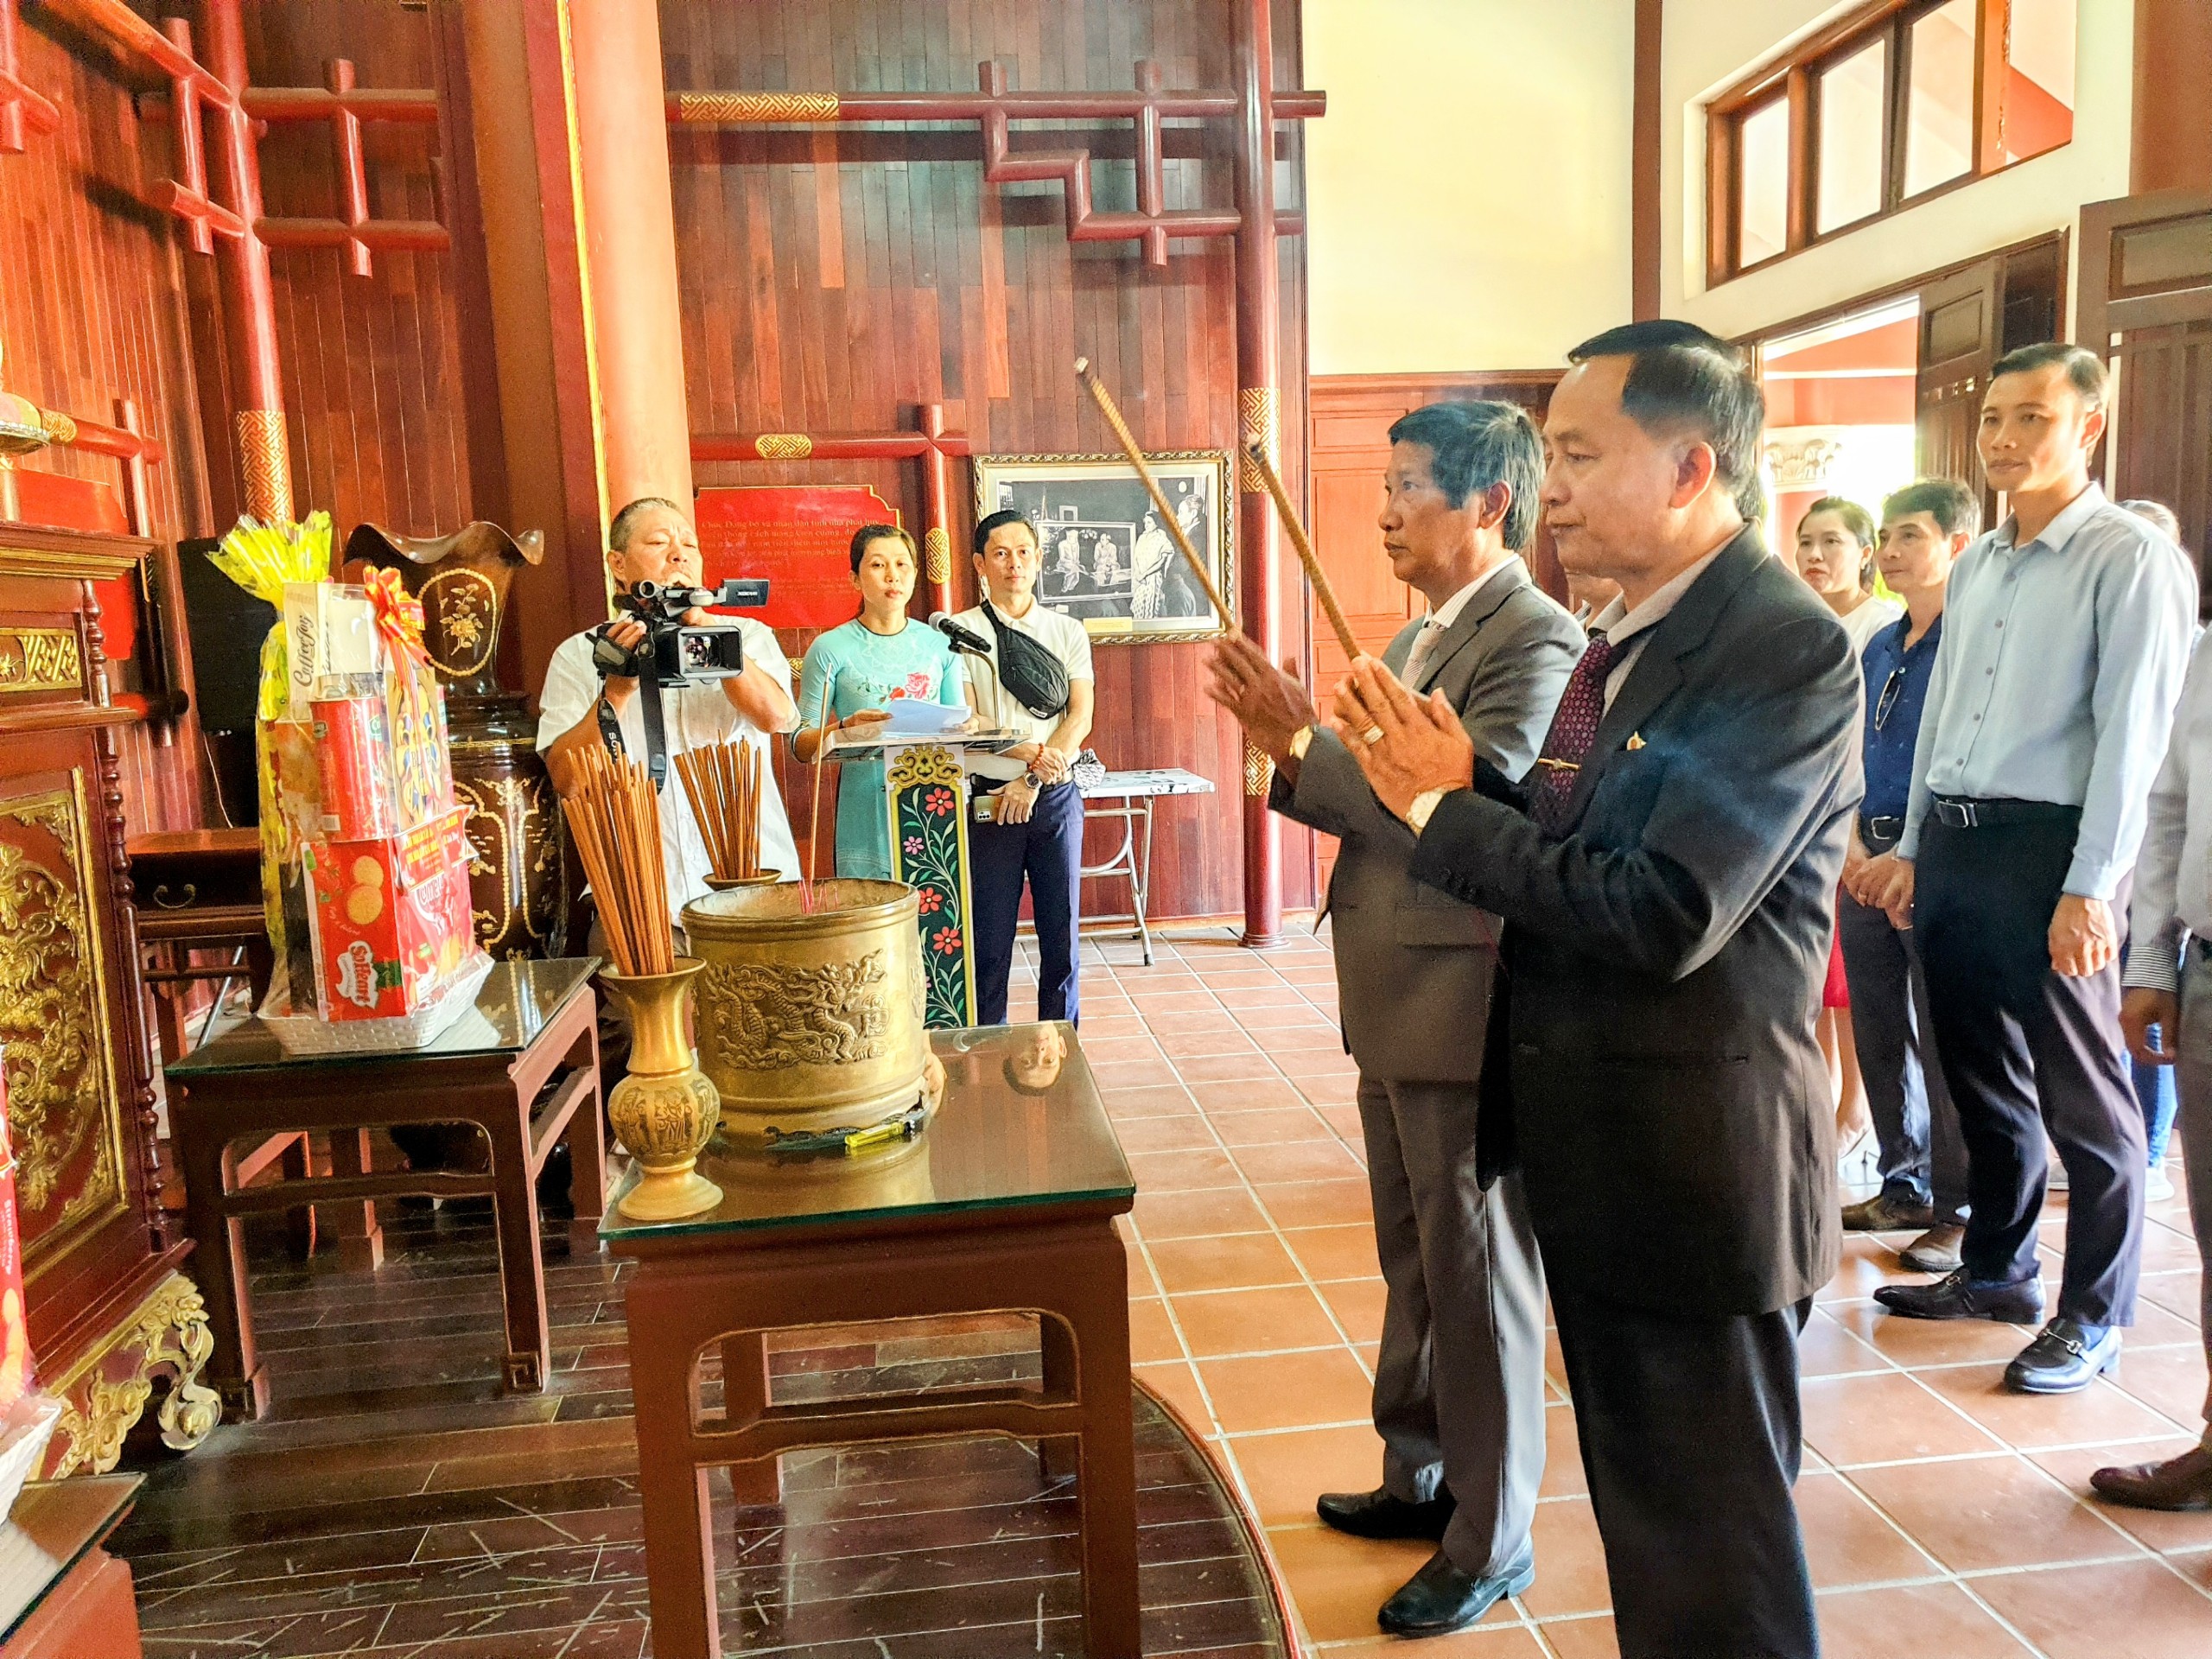 Đoàn công tác Ủy ban Mặt trận Lào xây dựng đất nước tỉnh Attapeu dâng hương tưởng niệm Thủ tướng Phạm Văn Đồng